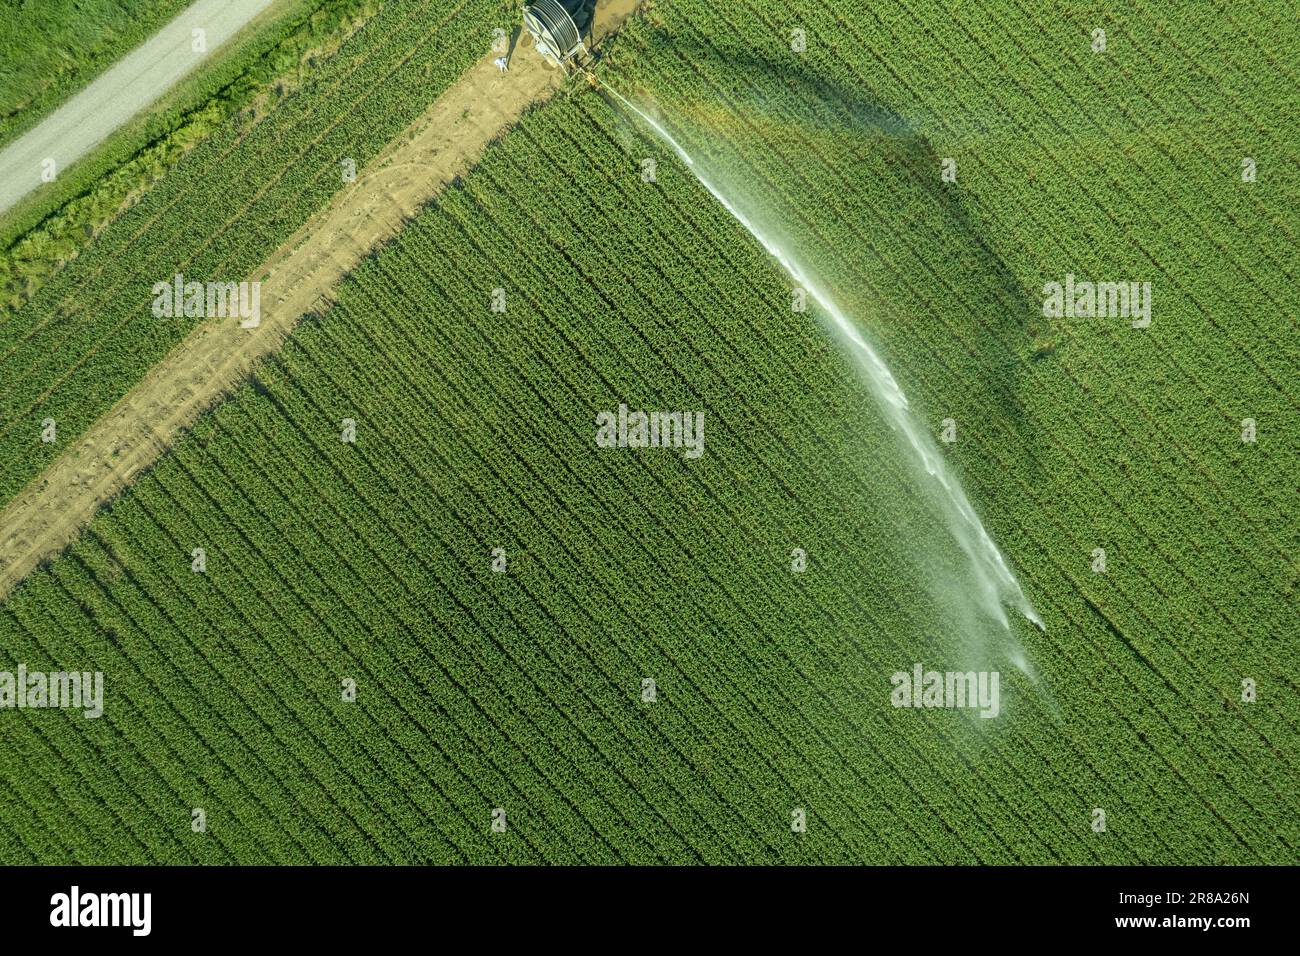 Luftdrohnenfotografie eines landwirtschaftlichen Bewässerungssystems mit einer großen Schlauchtrommel für den Anbau von Erntegut im Sommer nach einem sehr trockenen Wein Stockfoto